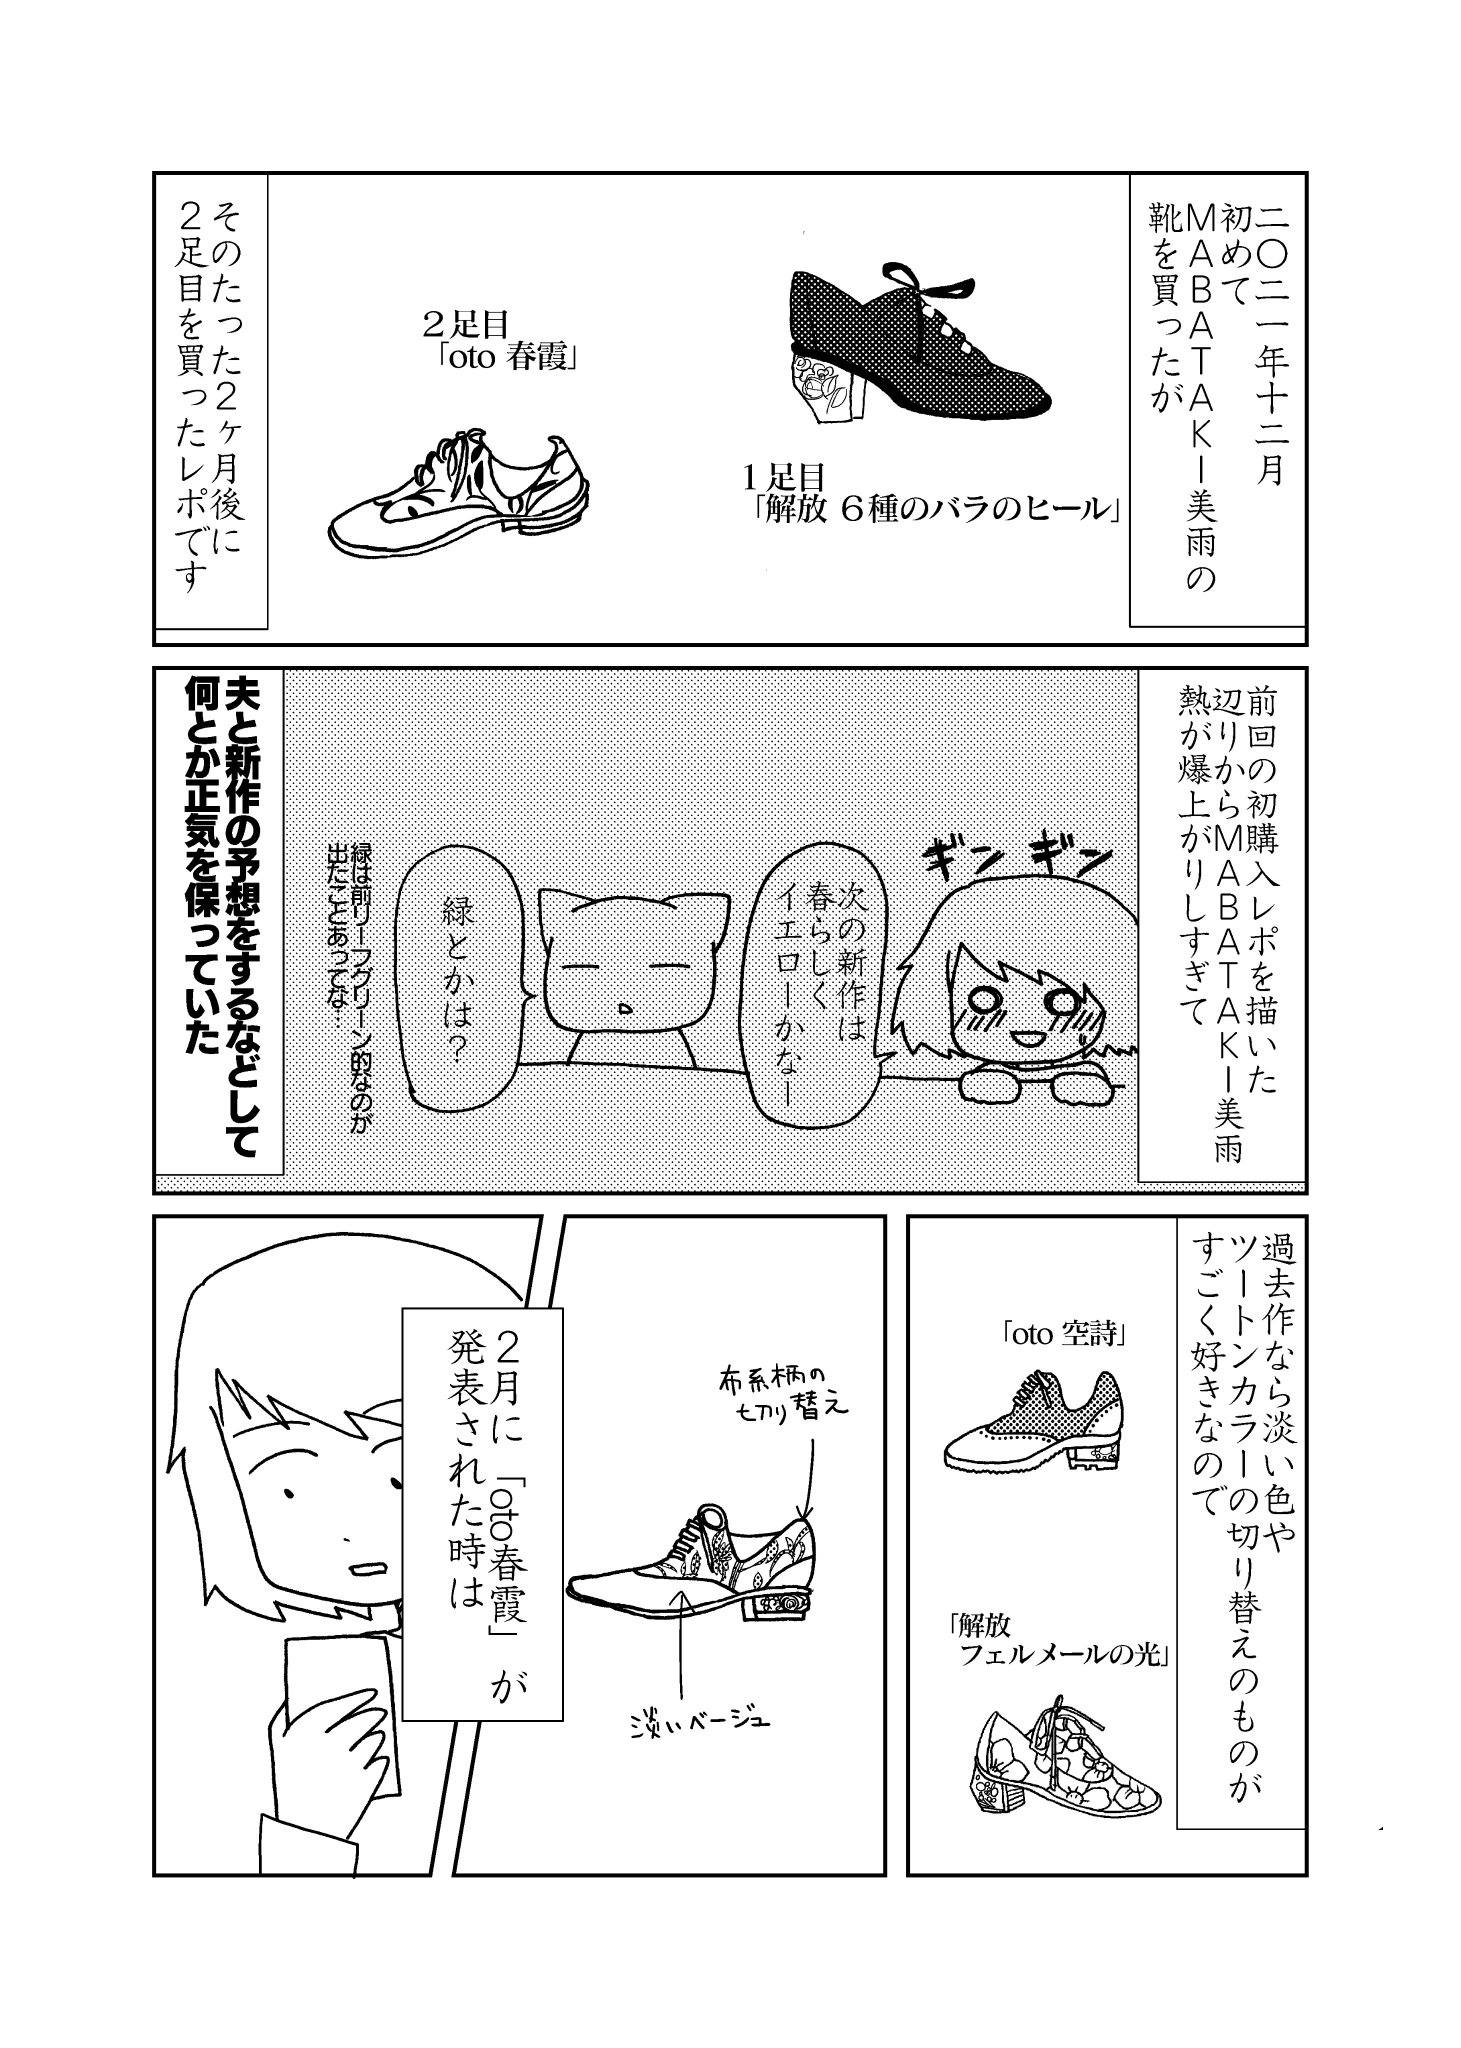 ハチ on Twitter: "MABATAKI美雨さんで自分の足にぴったりの靴を見つけた話。（1/2） https://t.co